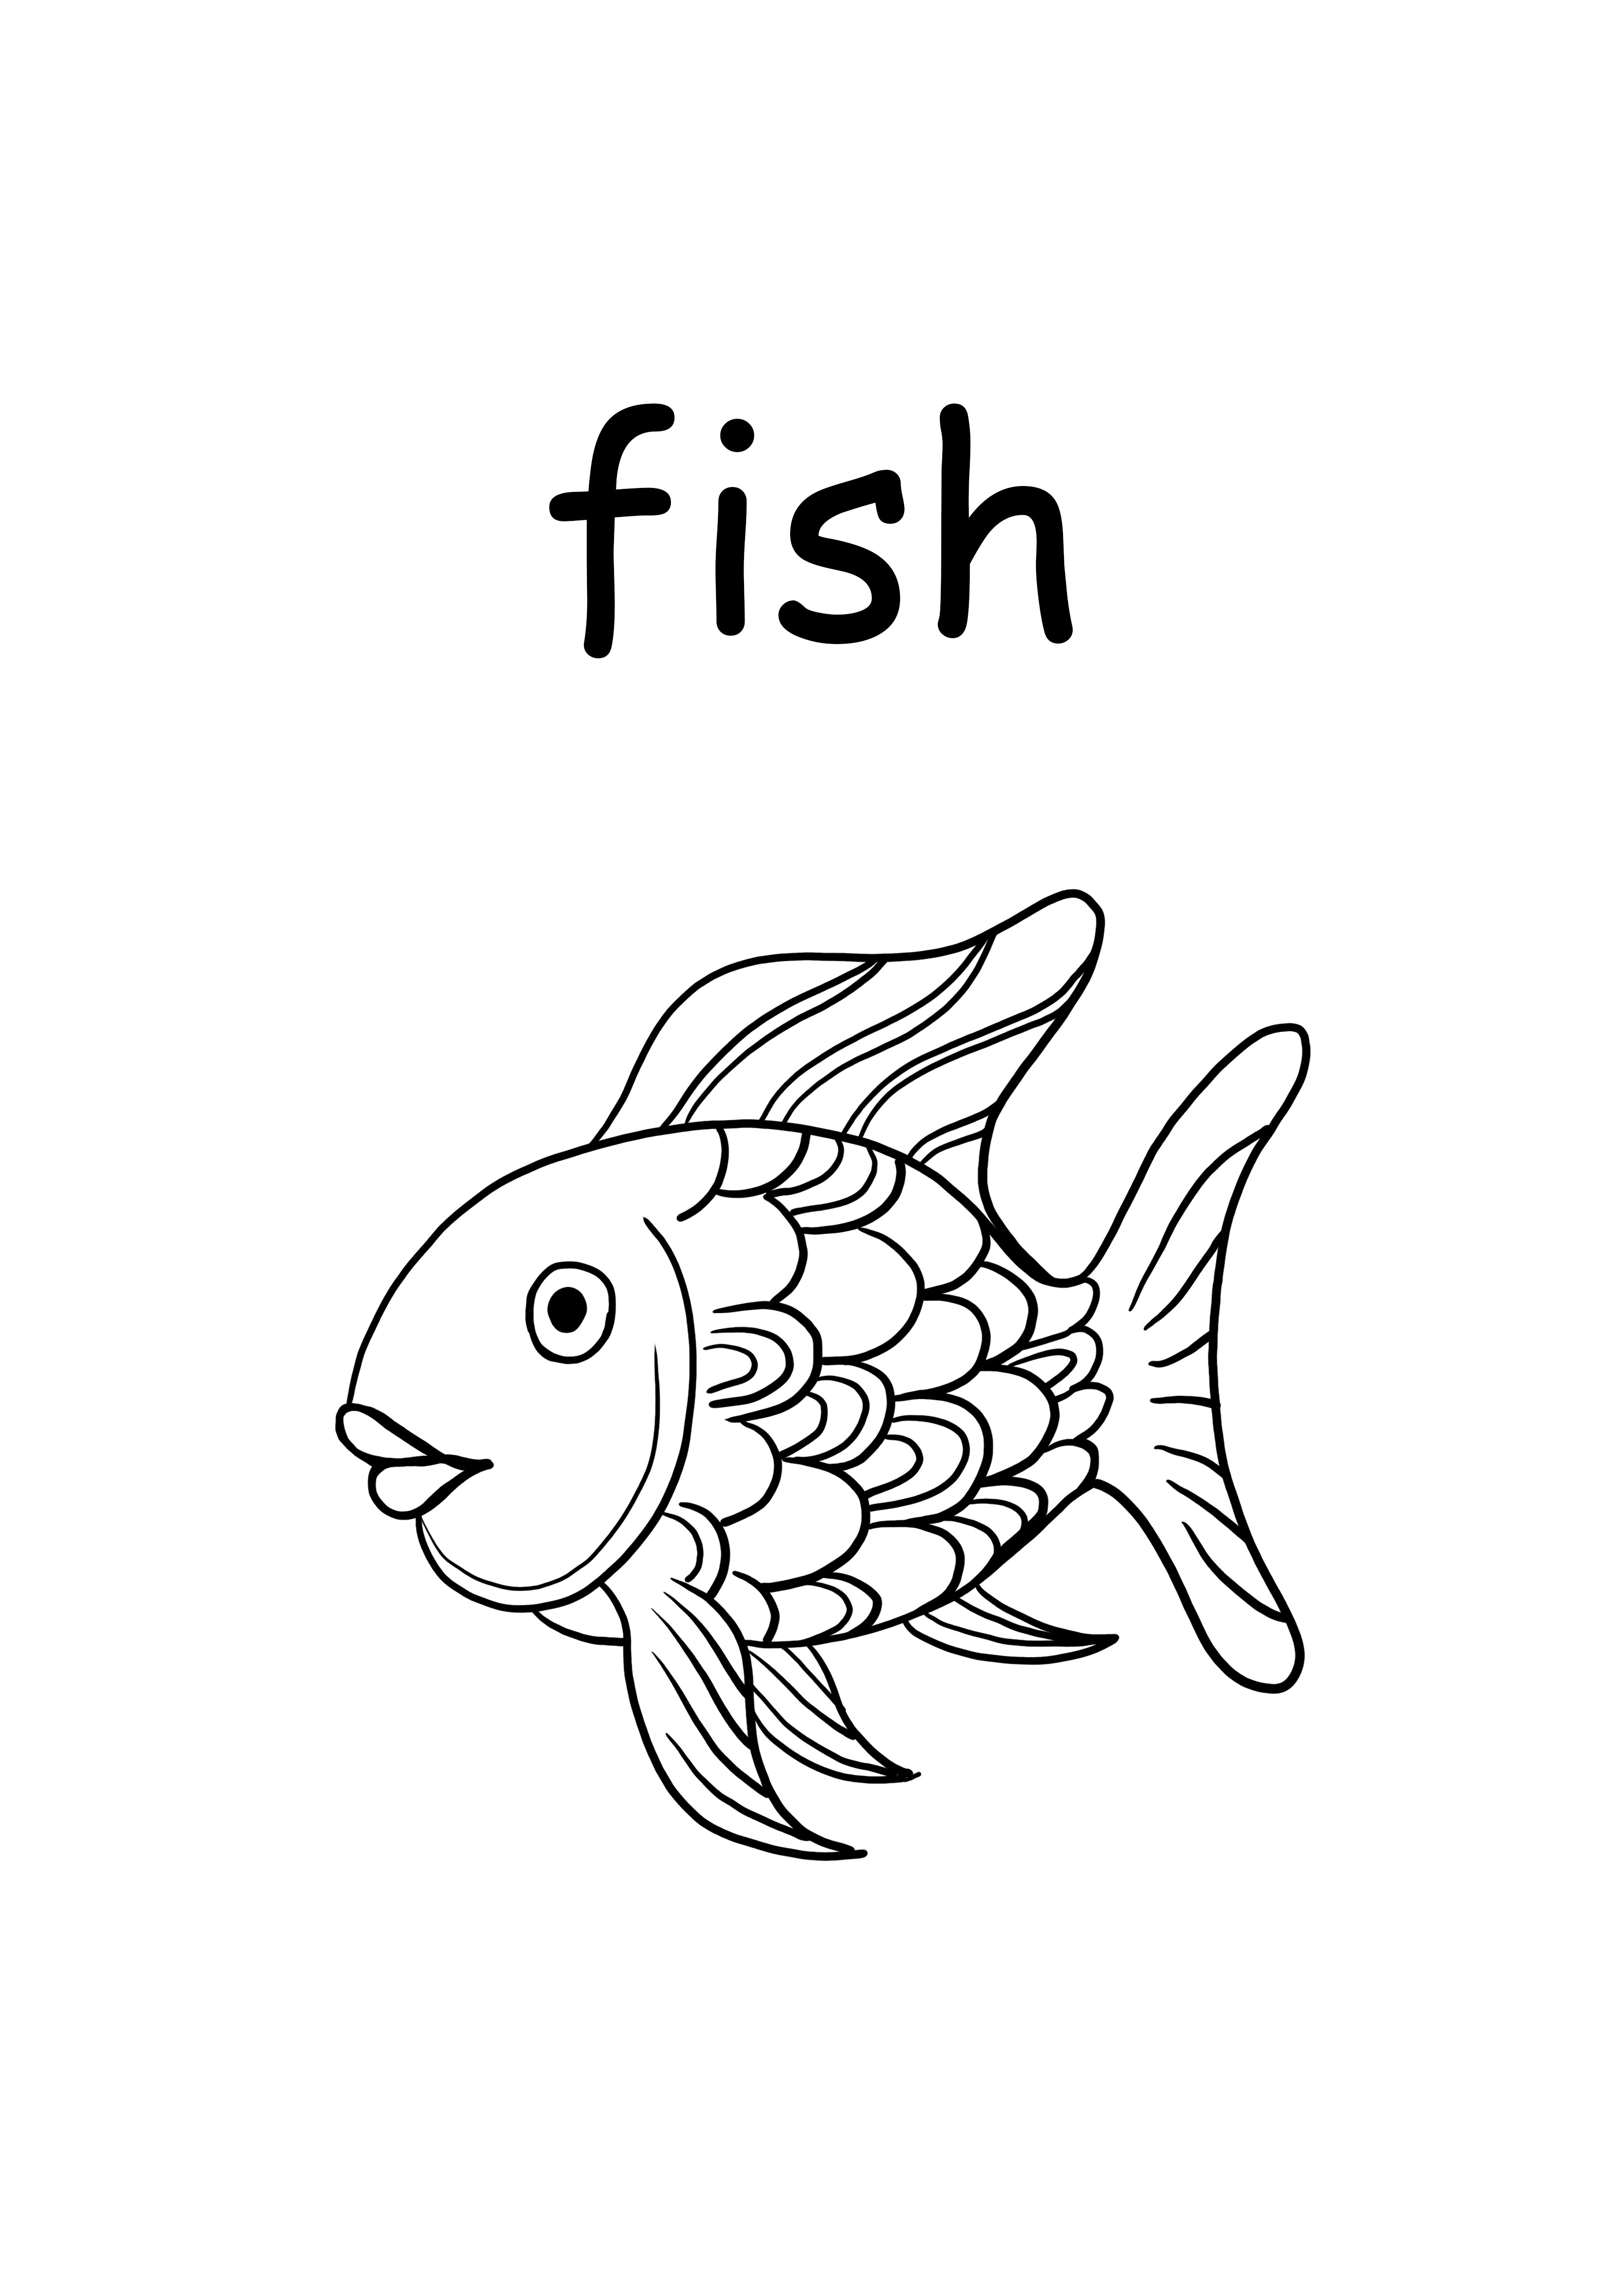 f dla ryb małe słowo do wydrukowania i pokolorowania za darmo